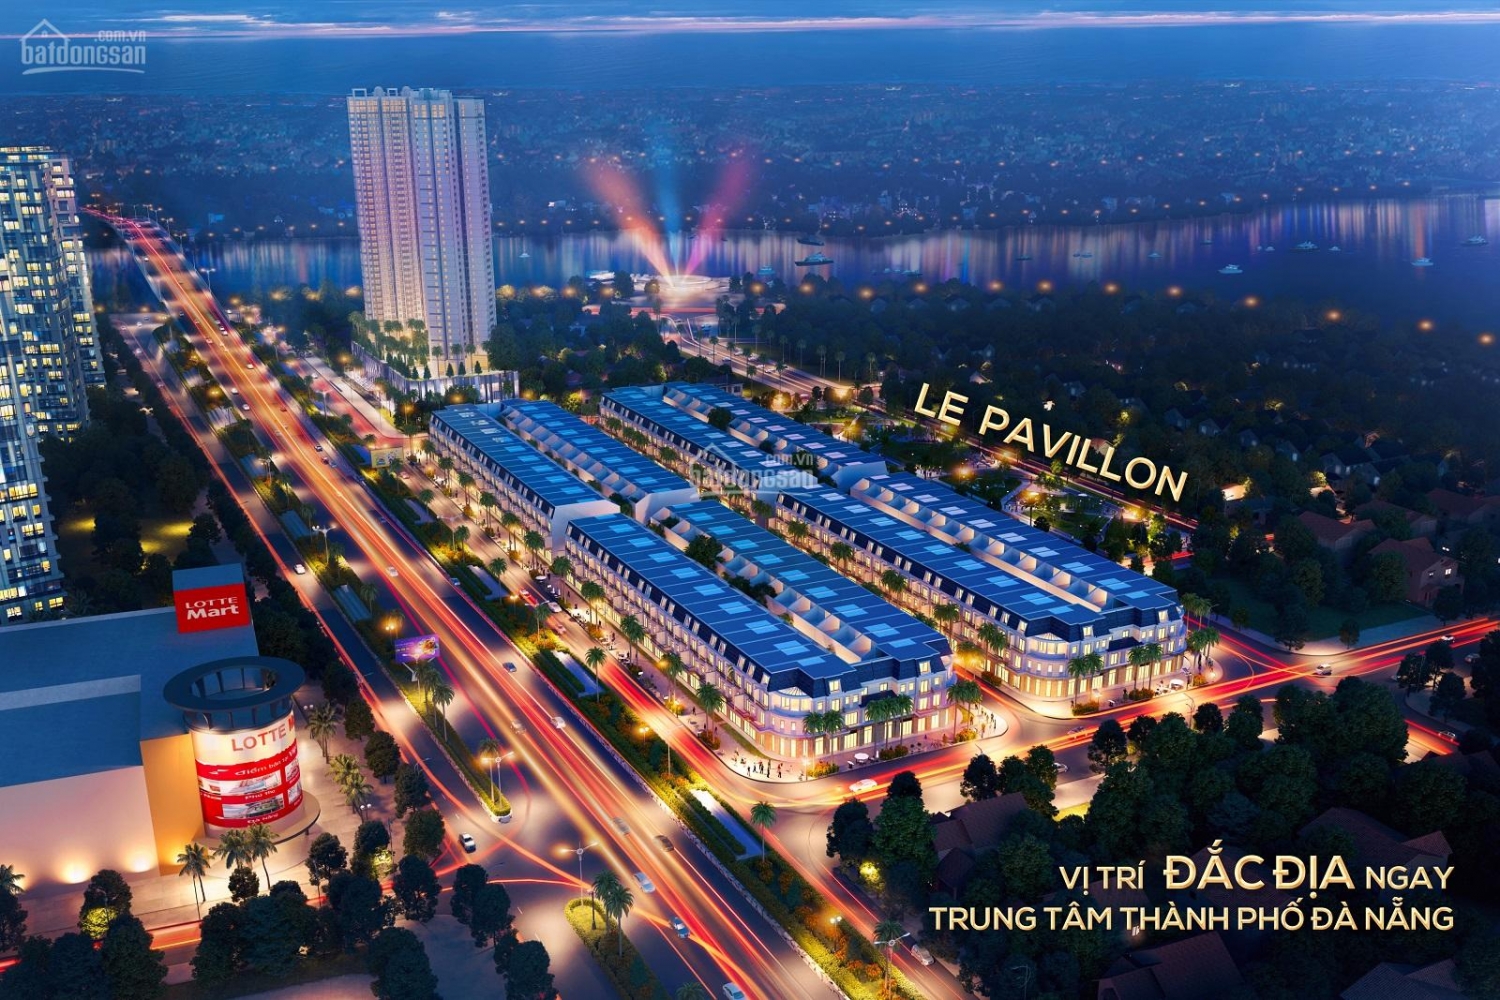 Tin nhanh bất động sản ngày 14/3: Đà Nẵng sắp ra mắt dự án căn hộ cao cấp Regal Pavillon ở cạnh sông Hàn